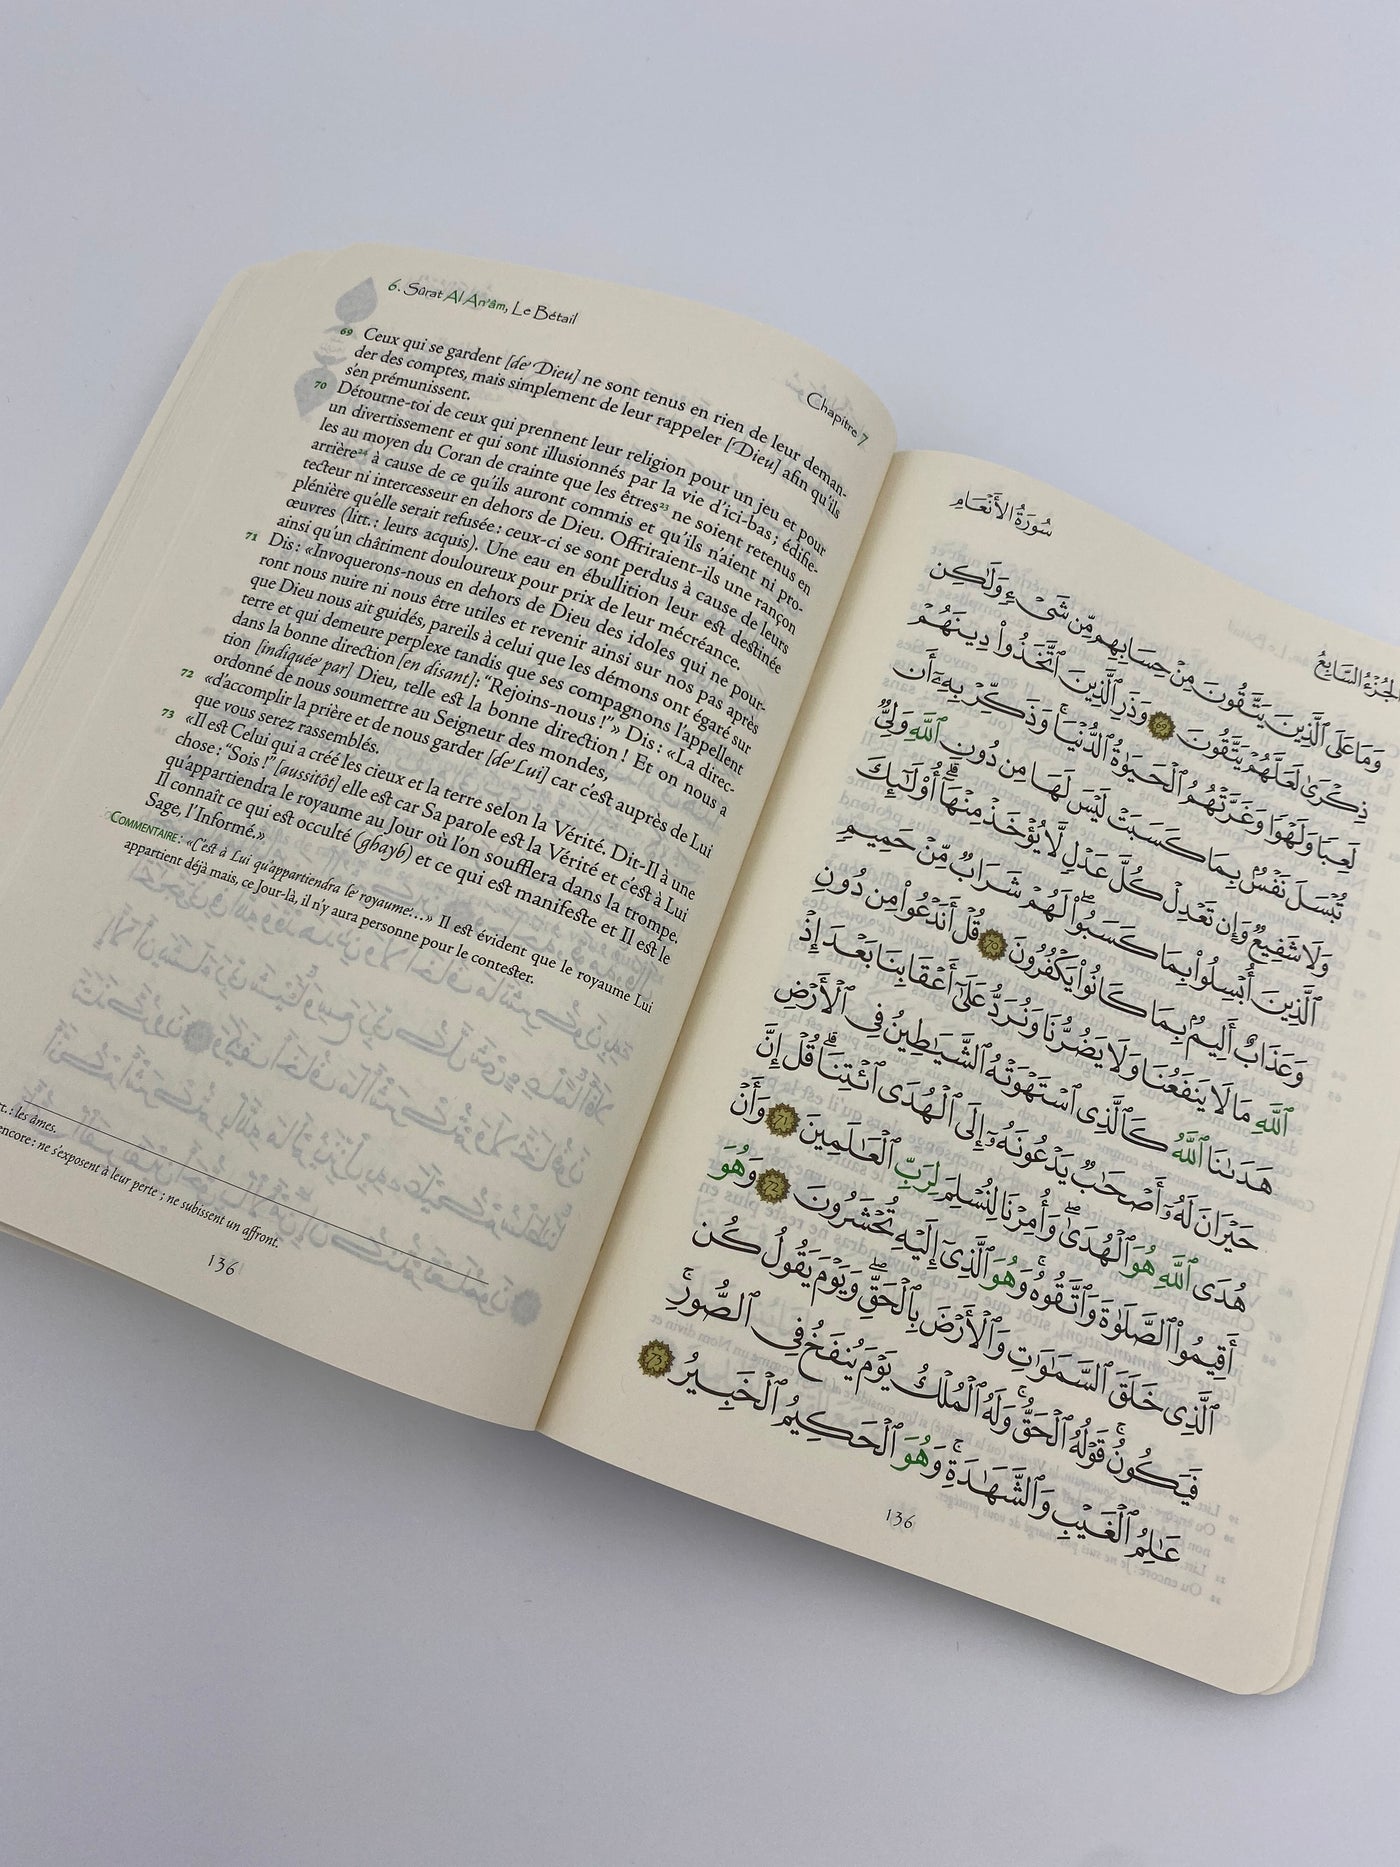 Der Edle Koran und die französische Übersetzung seiner Bedeutungen, graues Hardcover